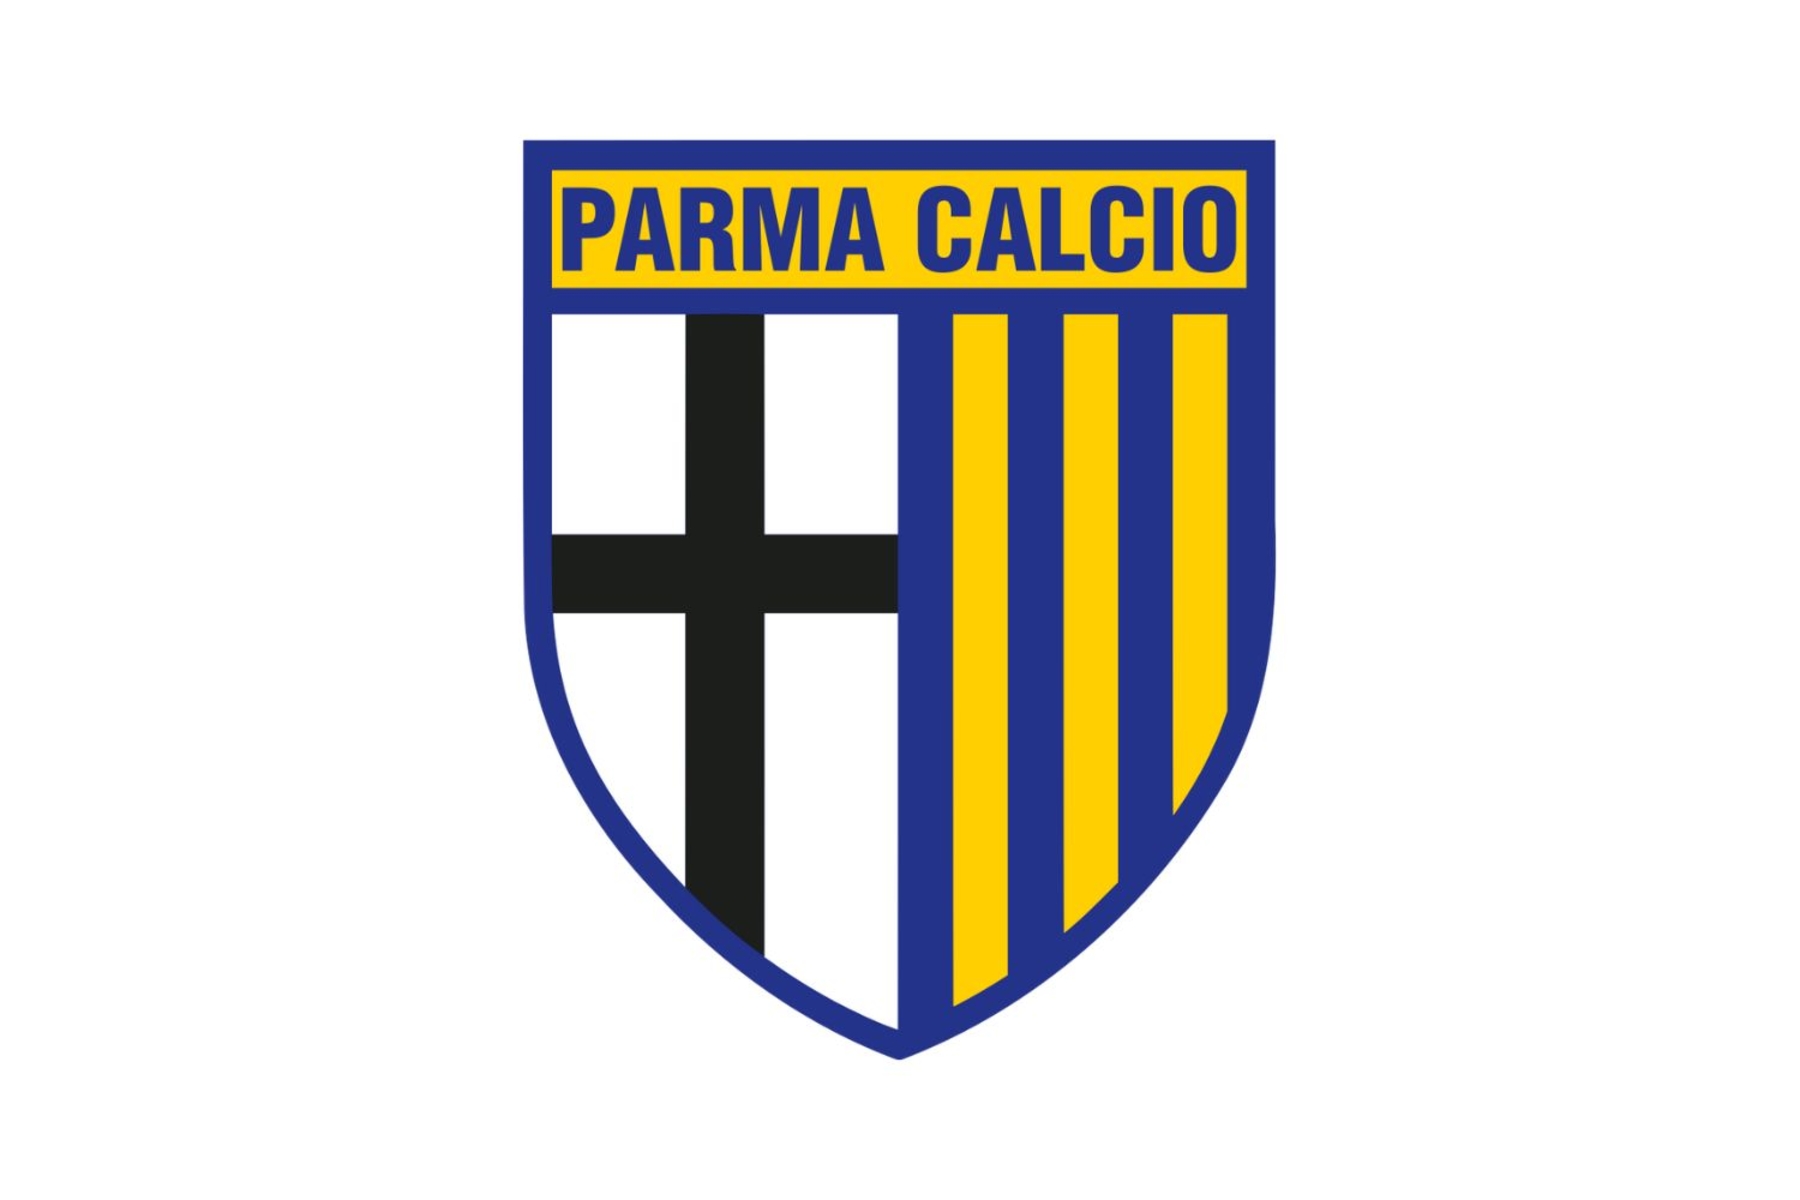 Parma Calcio 1913 - Wikipedia